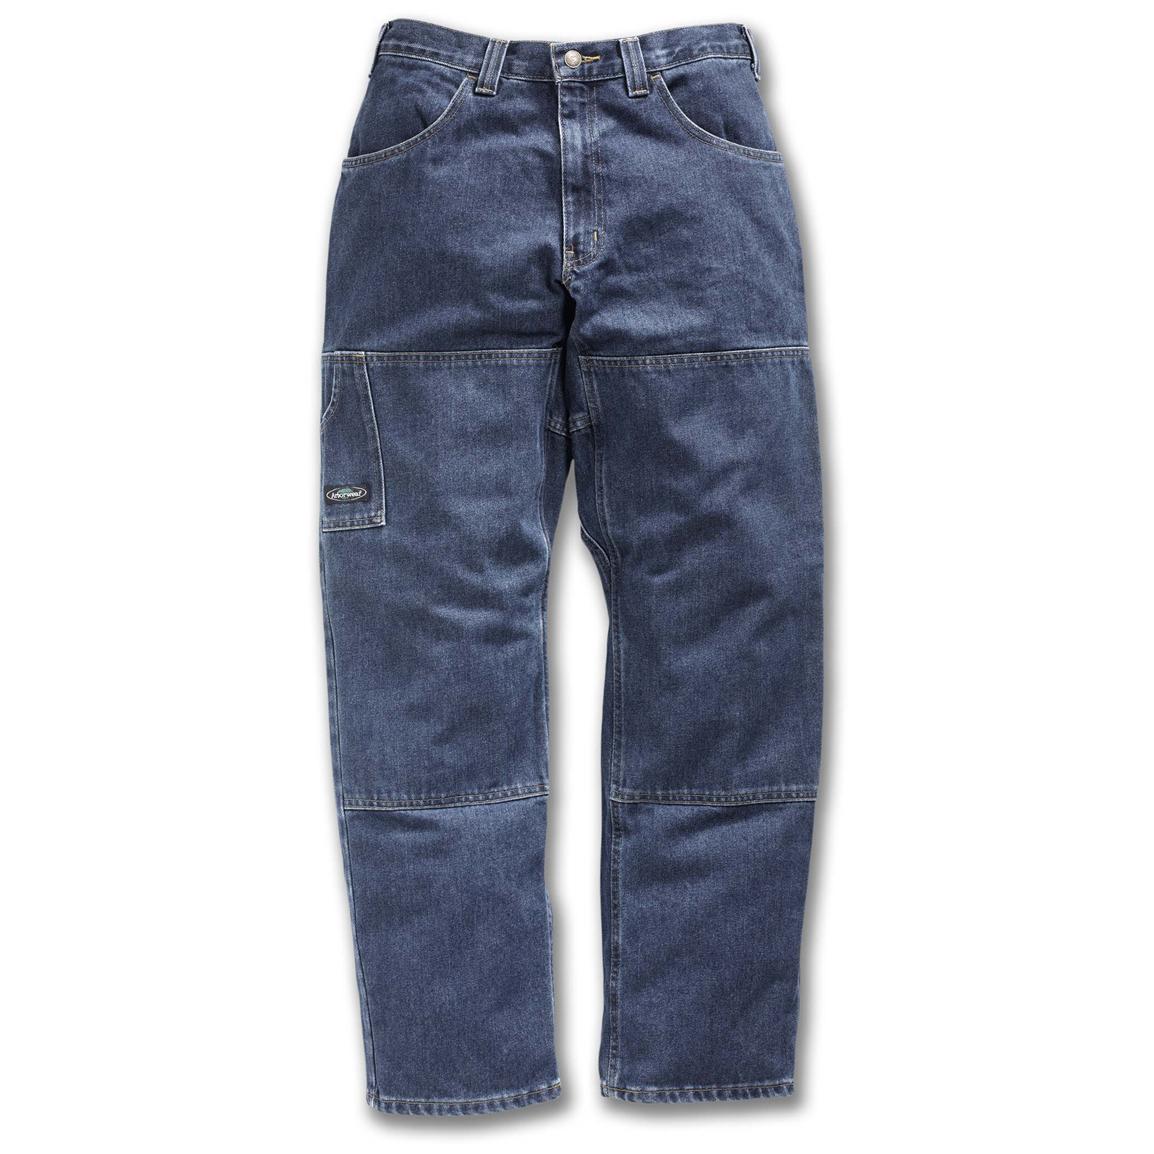 Men's Arborwear® Original Blue Jeans - 226890, Jeans & Pants at ...